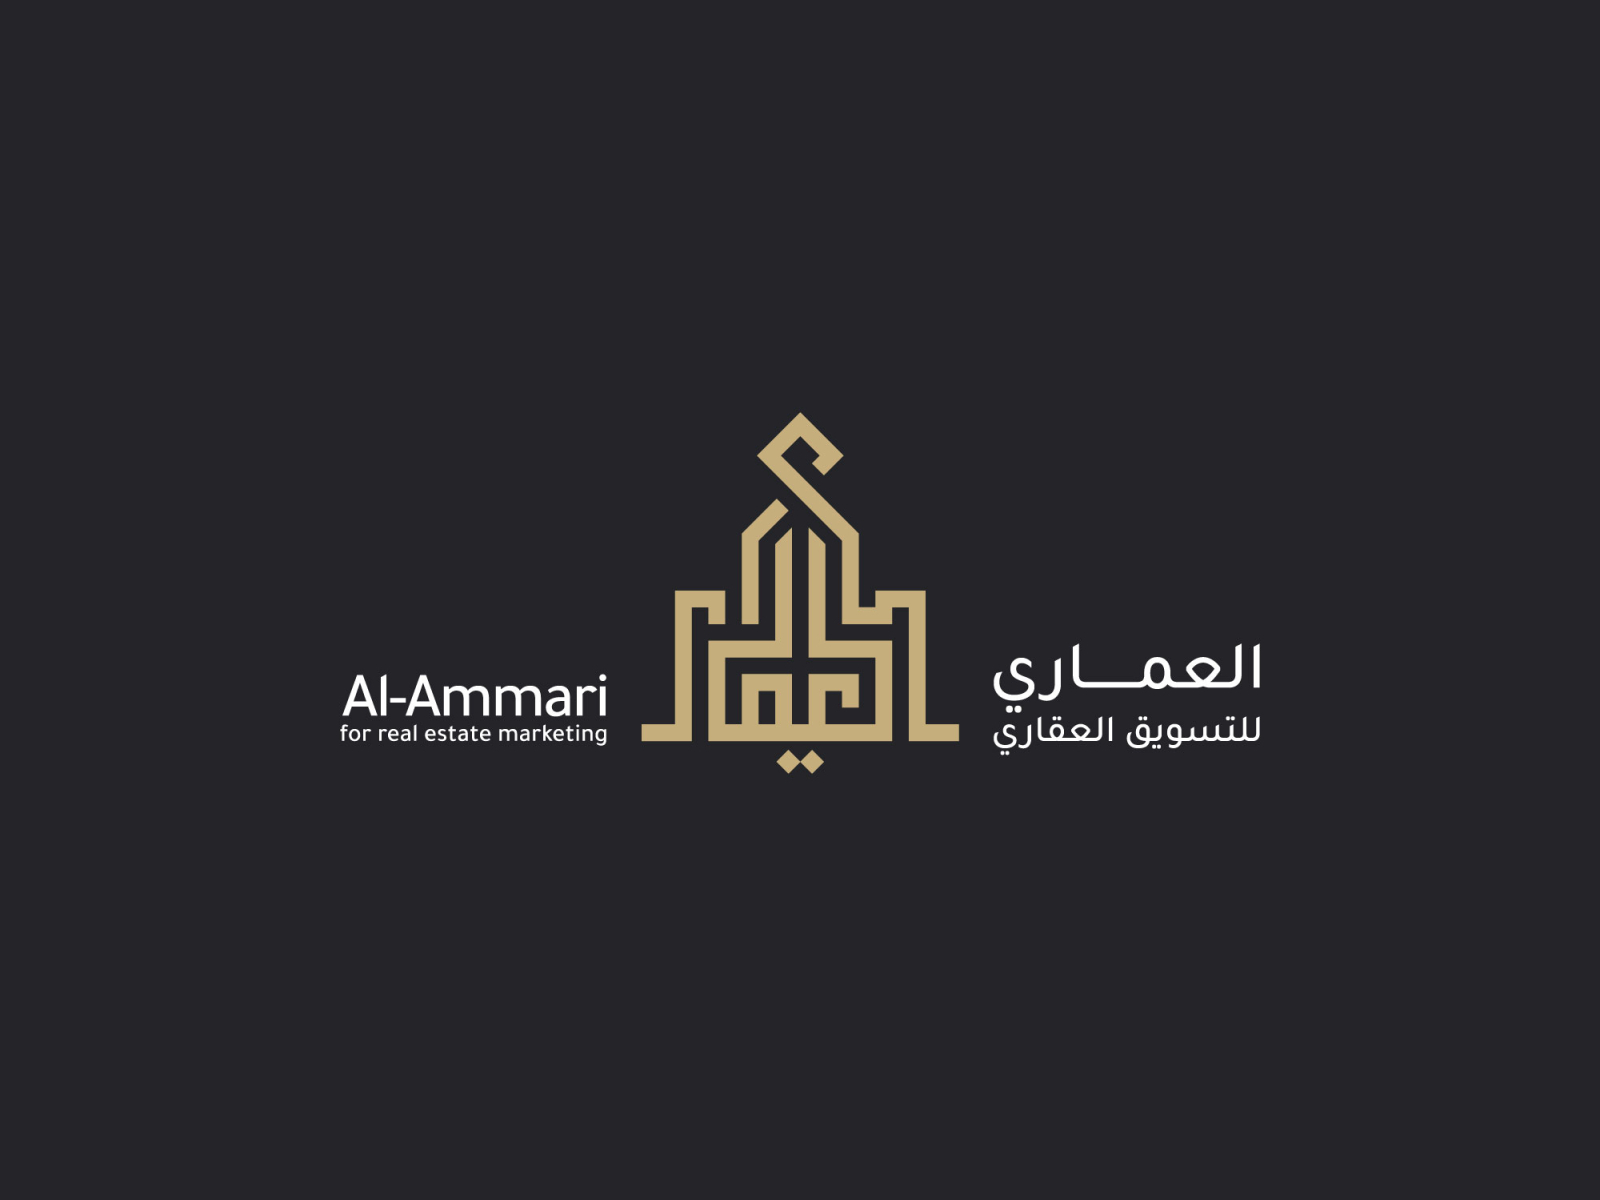 Al-Ammari for real estate marketing by Kareem Alaa on Dribbble